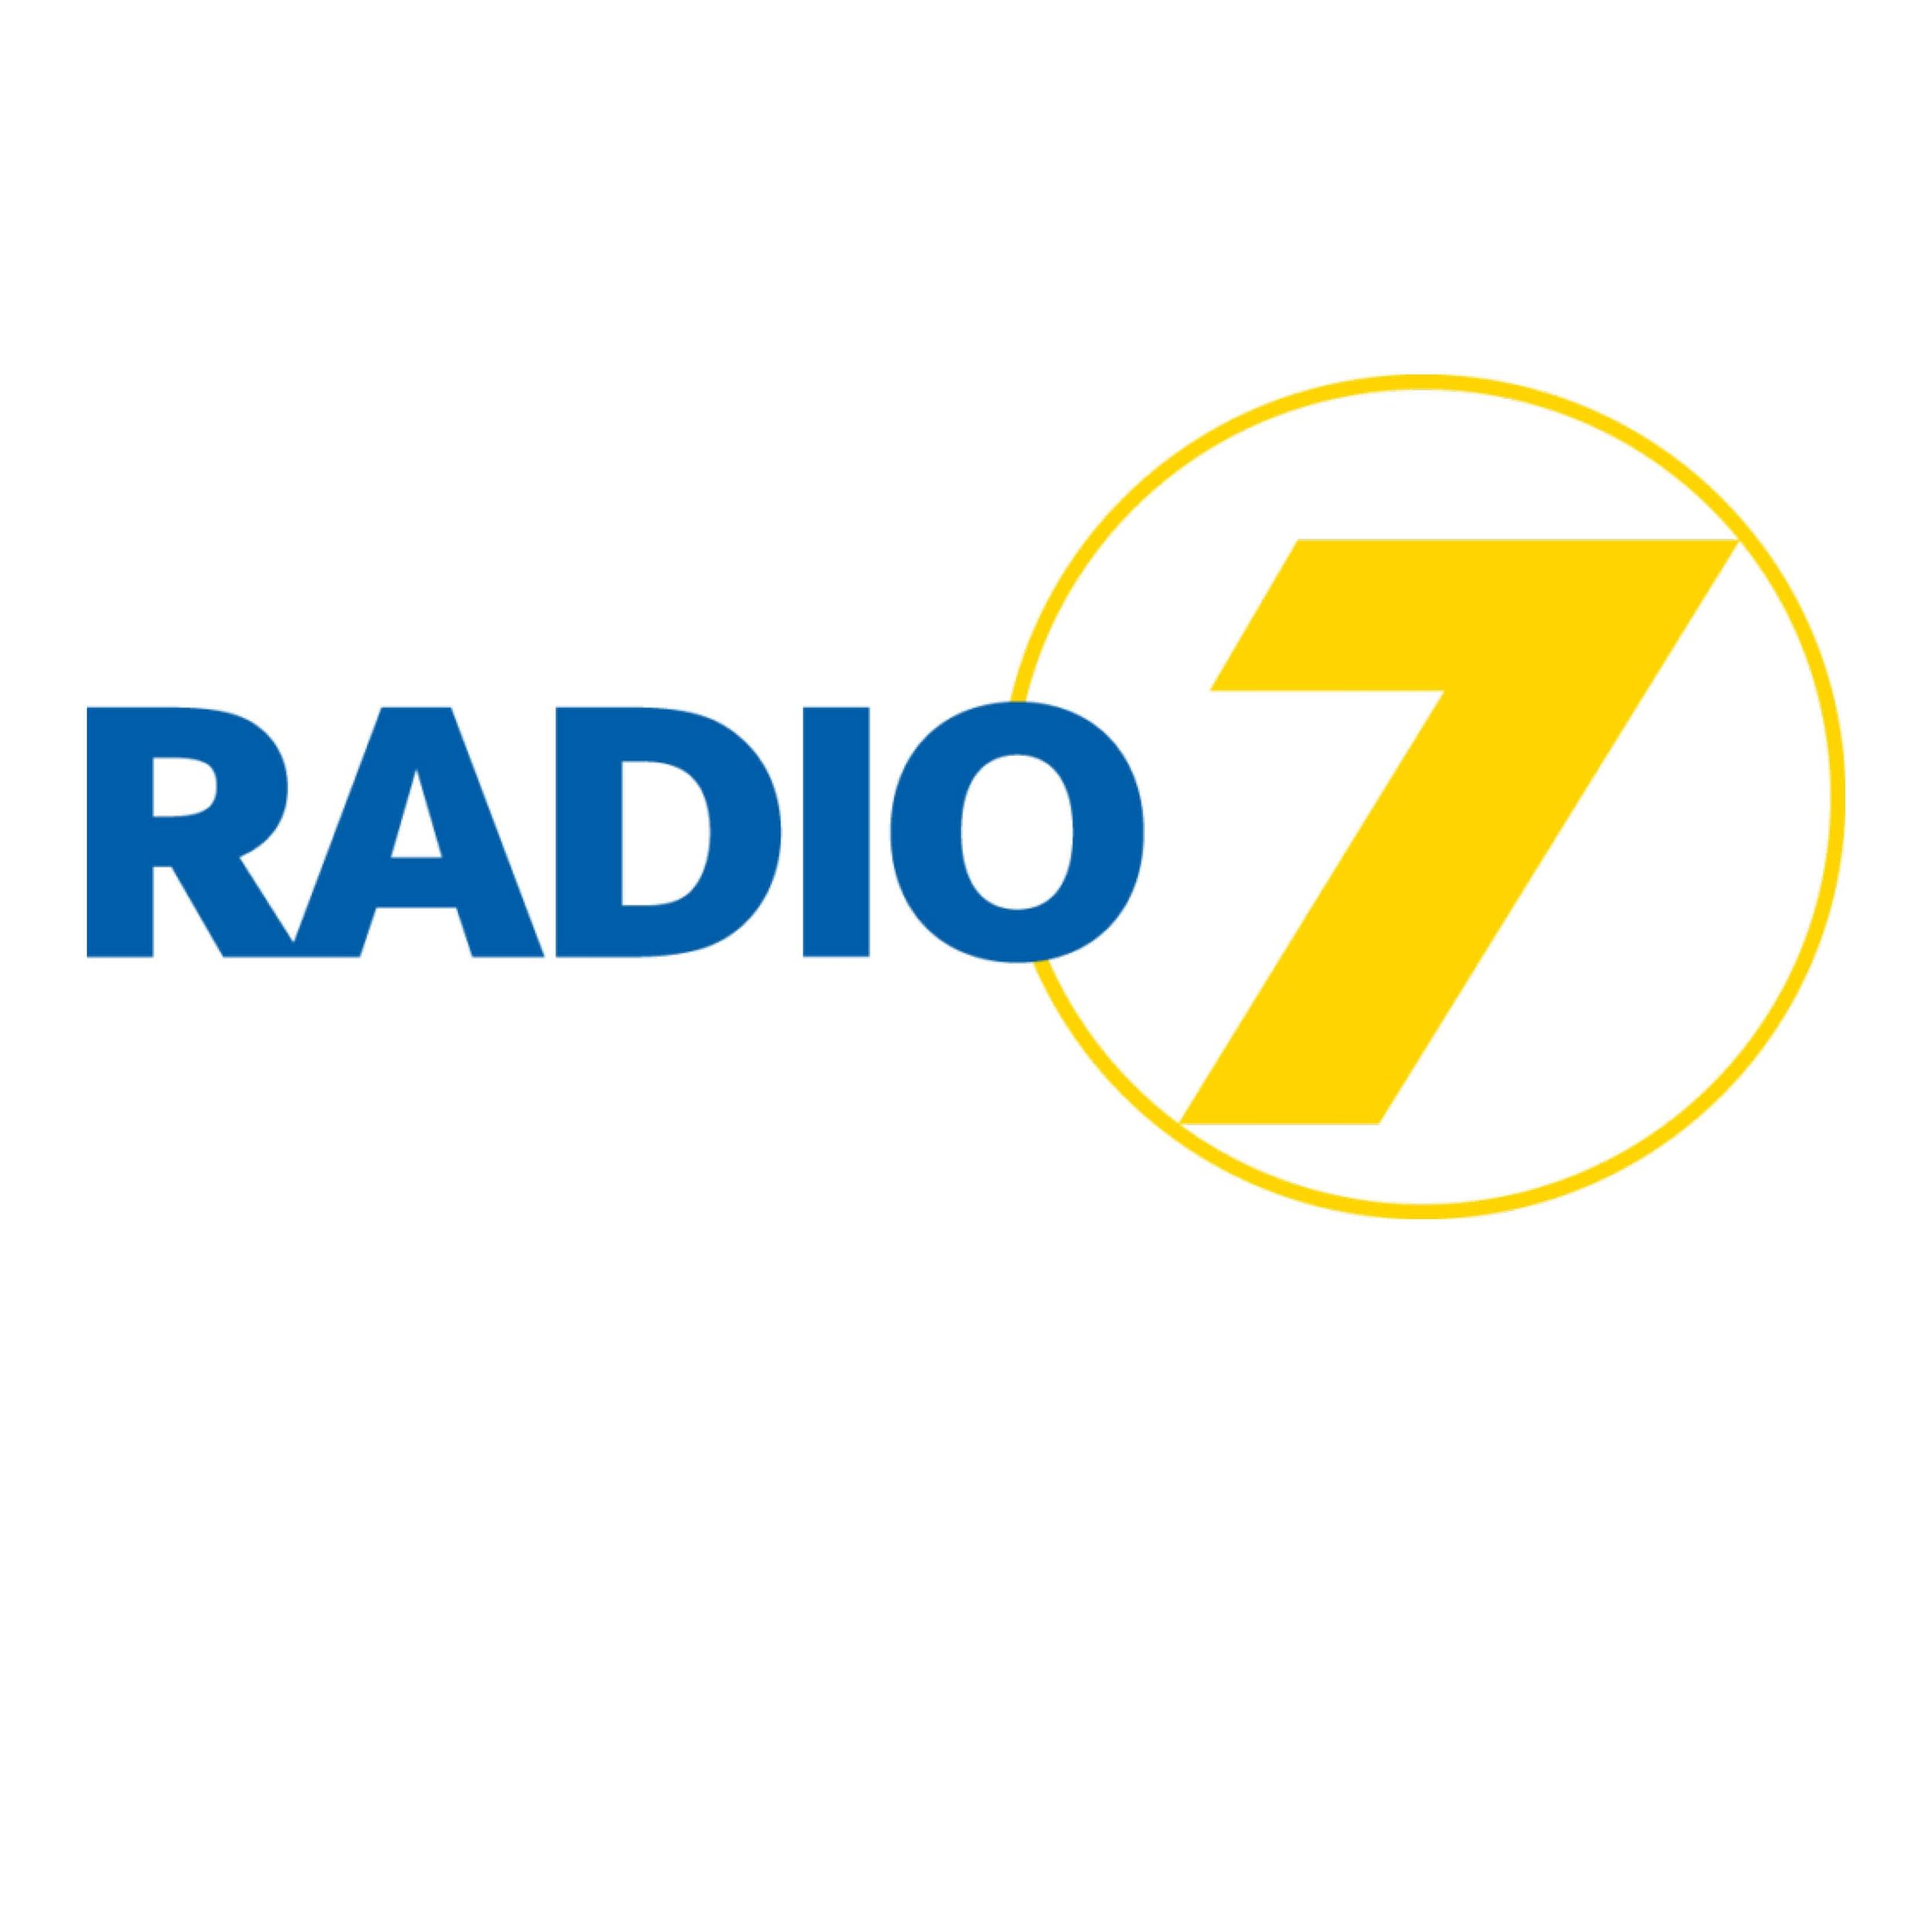 Radio 7 (Kopie) (Kopie) (Kopie) (Kopie)